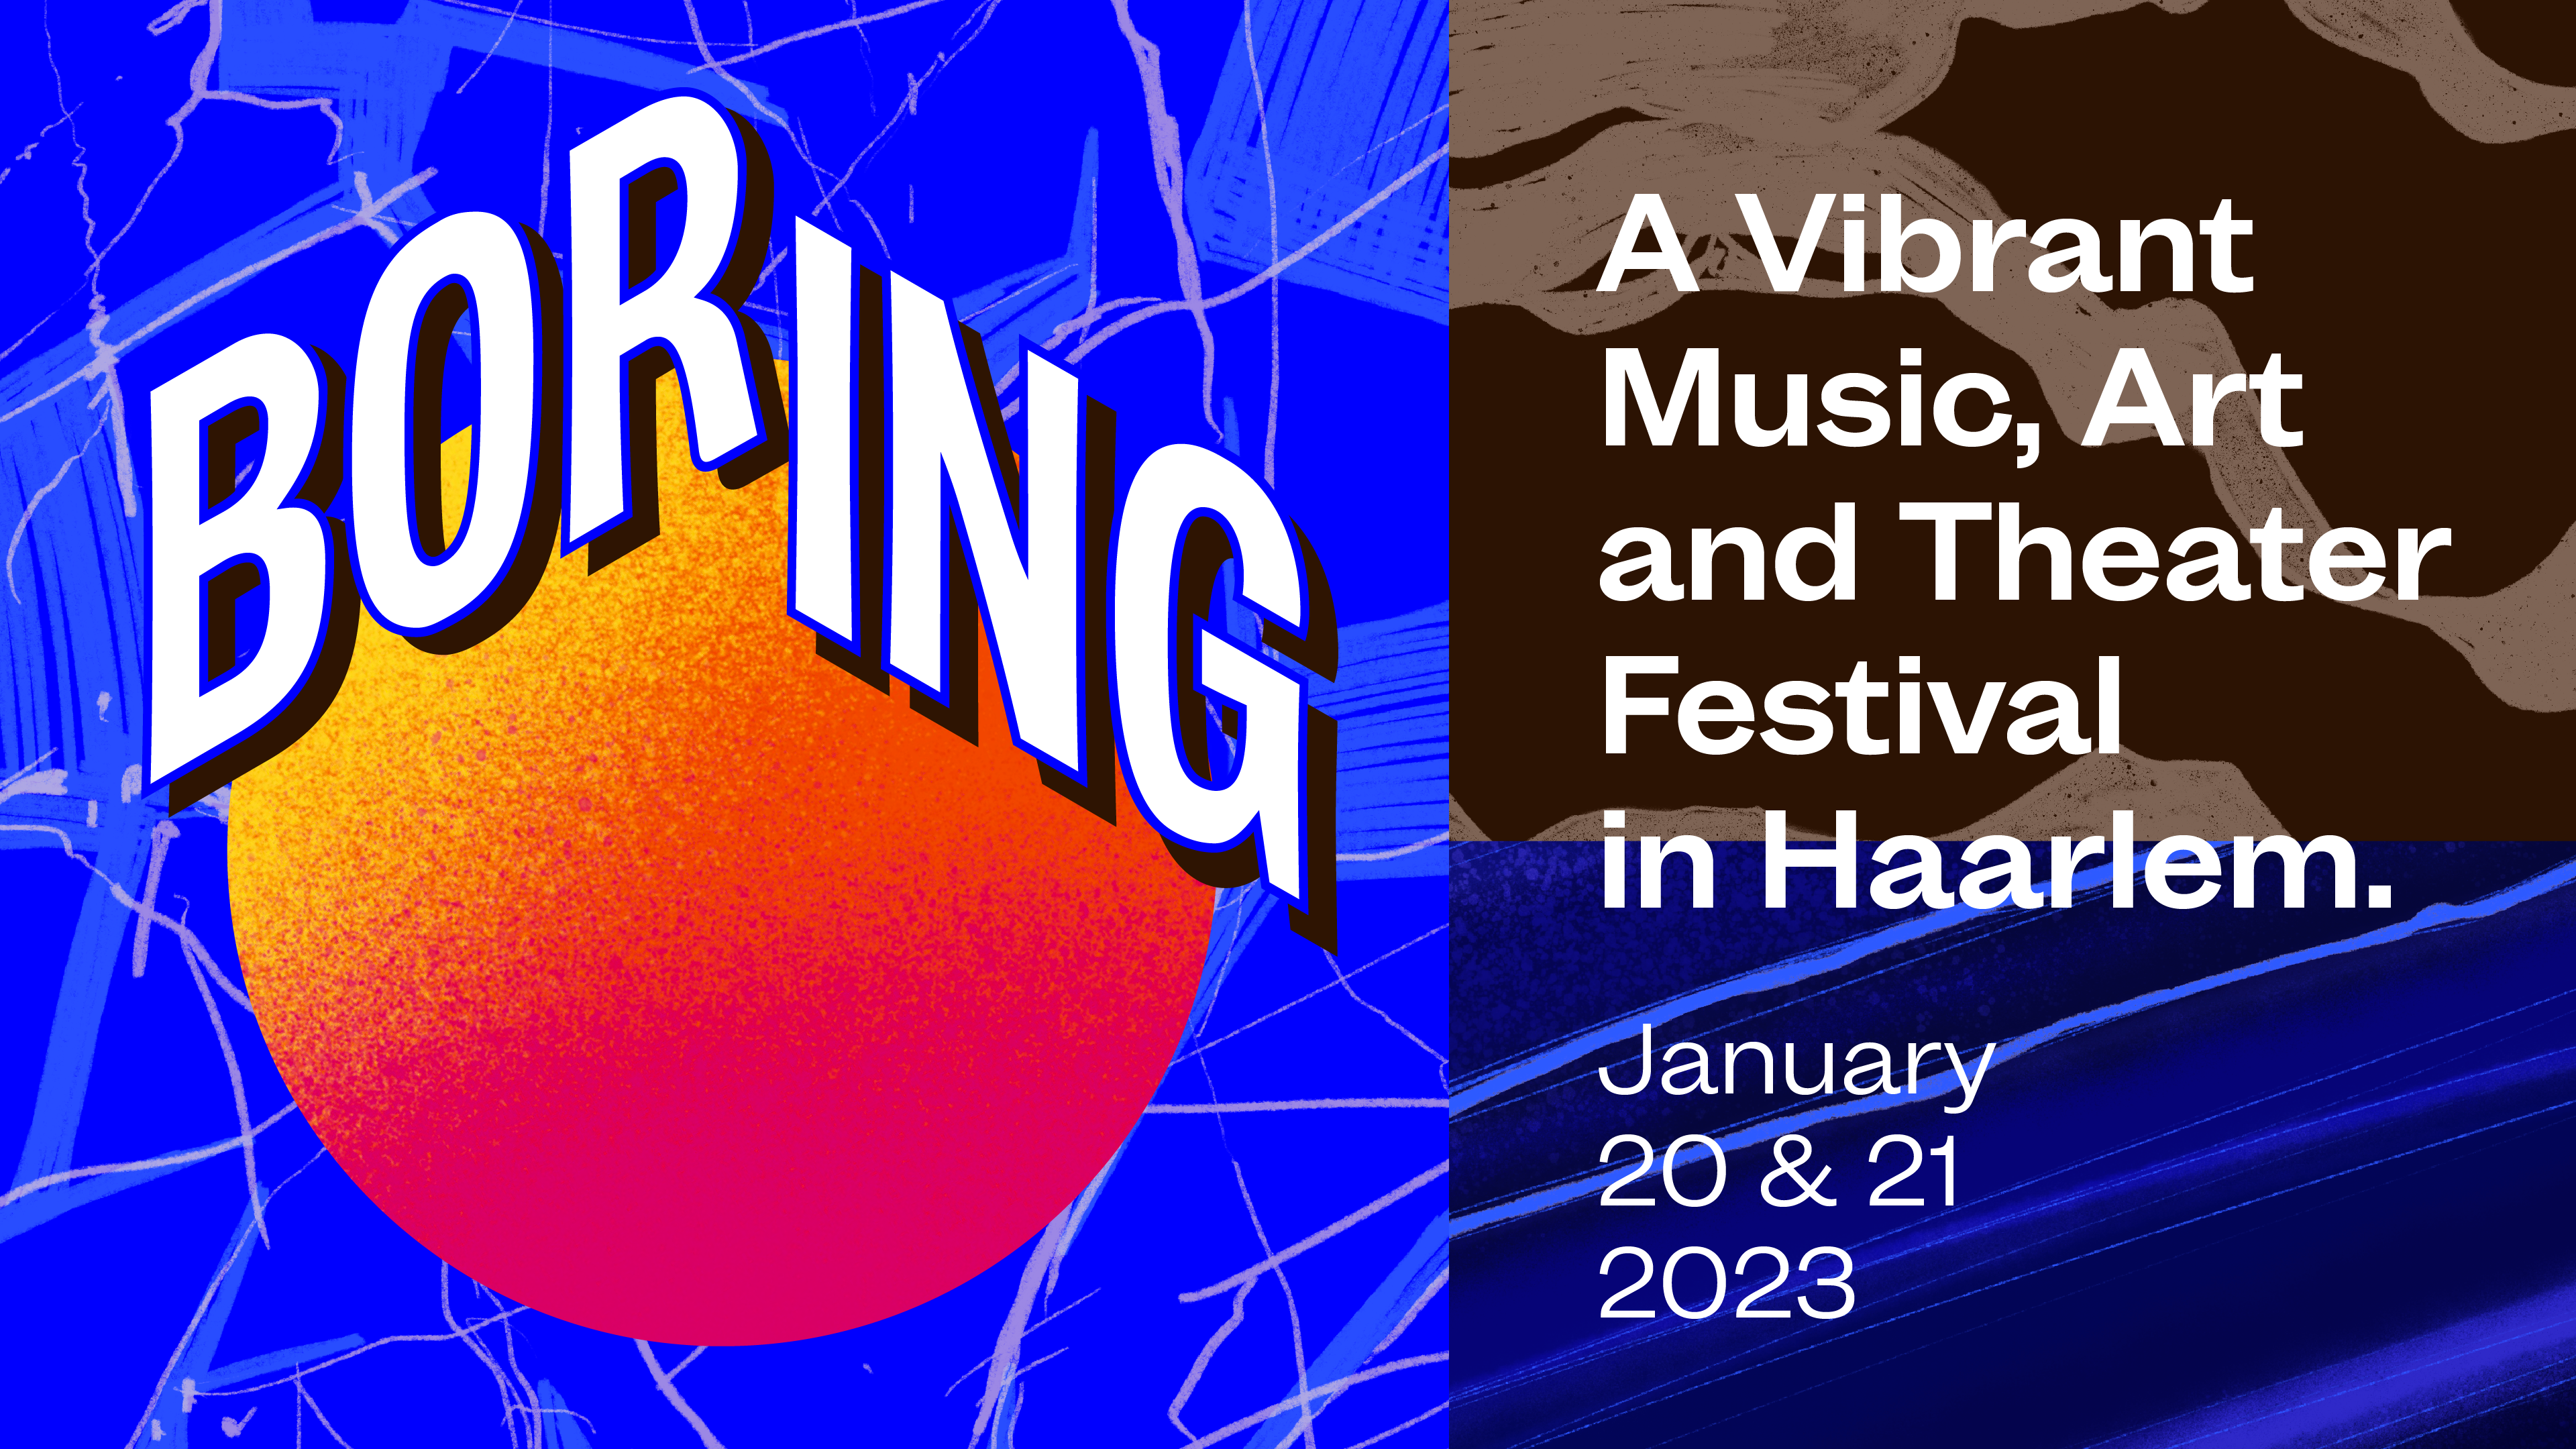 Boring festival - januari 2023